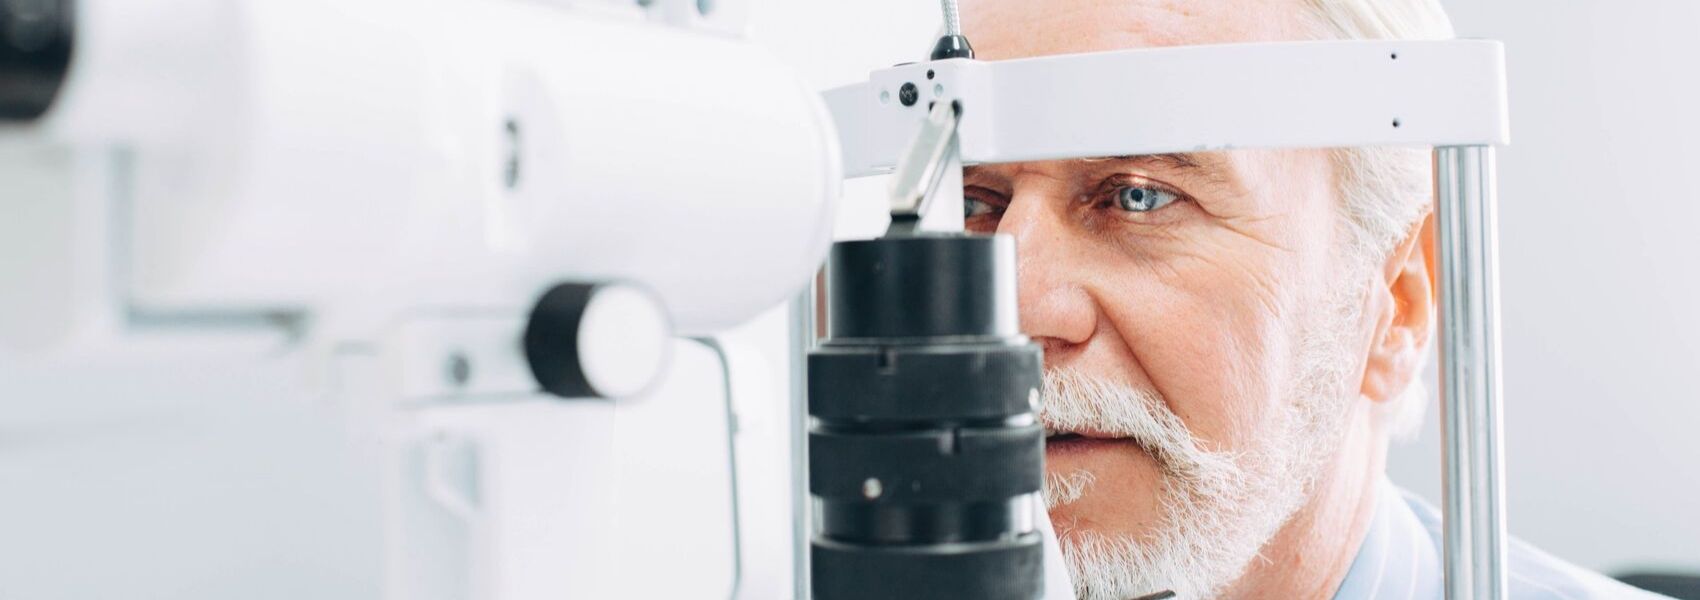 exame ocular para diagnosticar Alzheimer